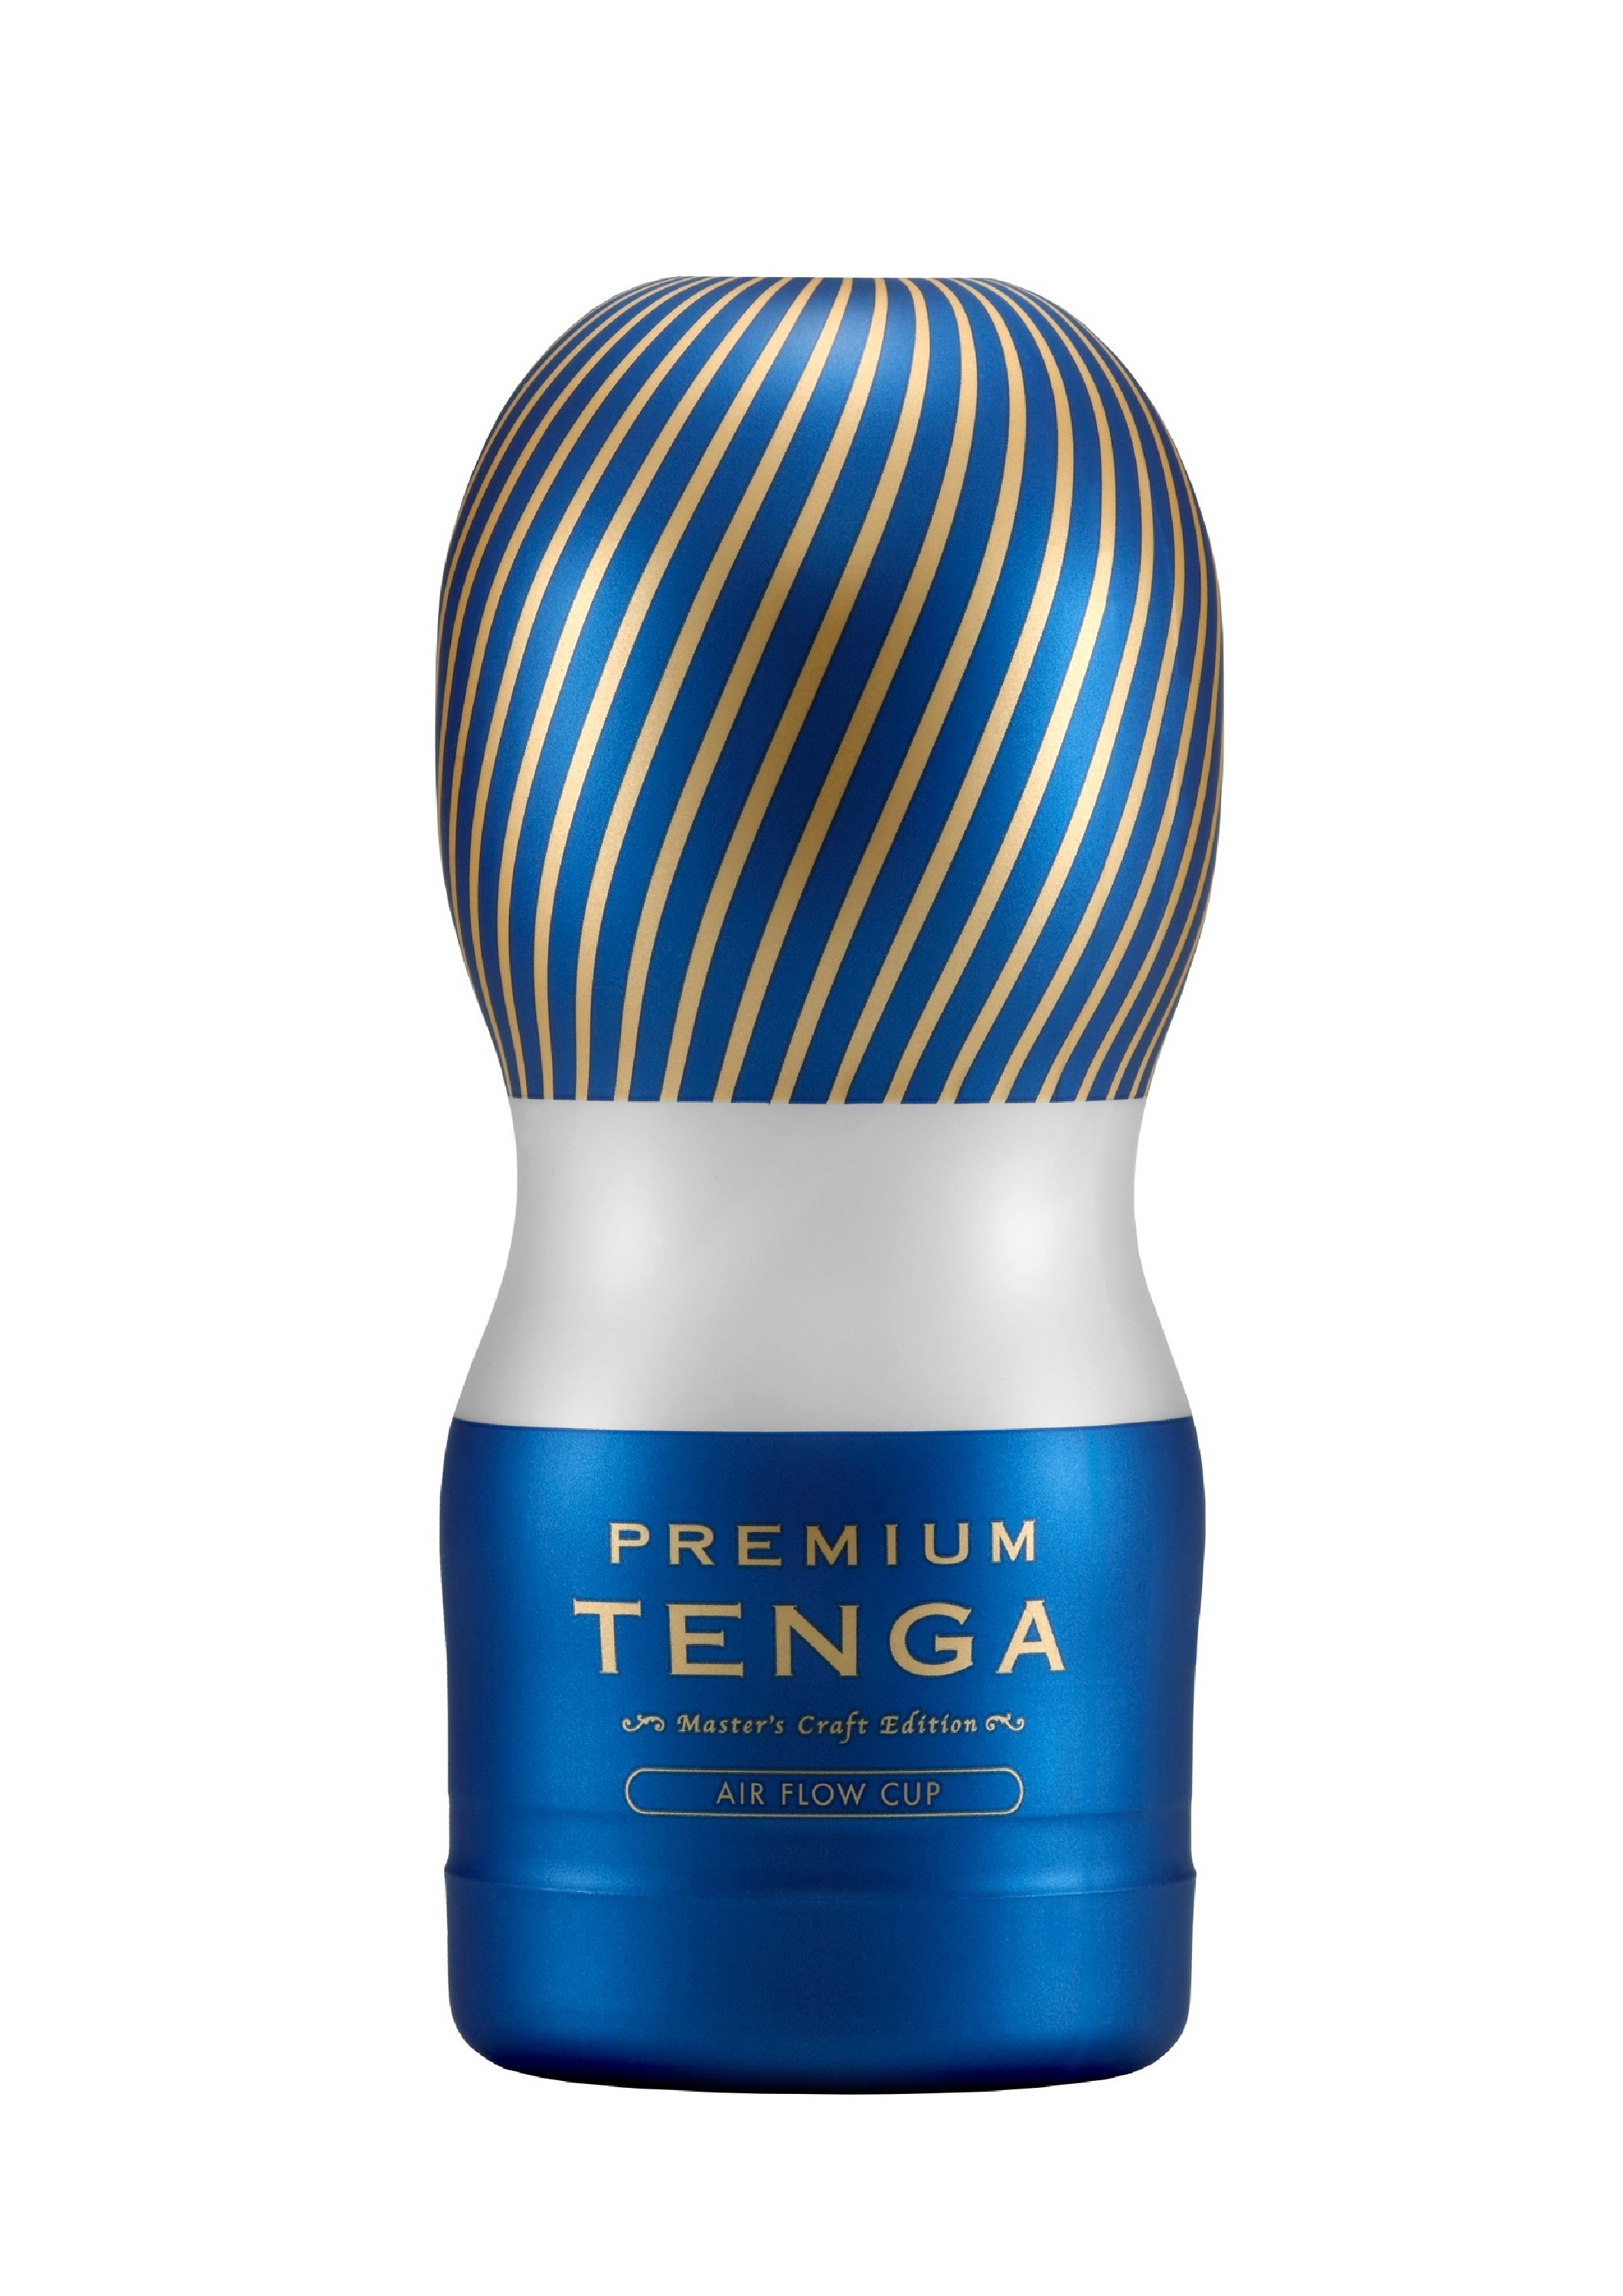 TENGA Premium AIR FLOW CUP.